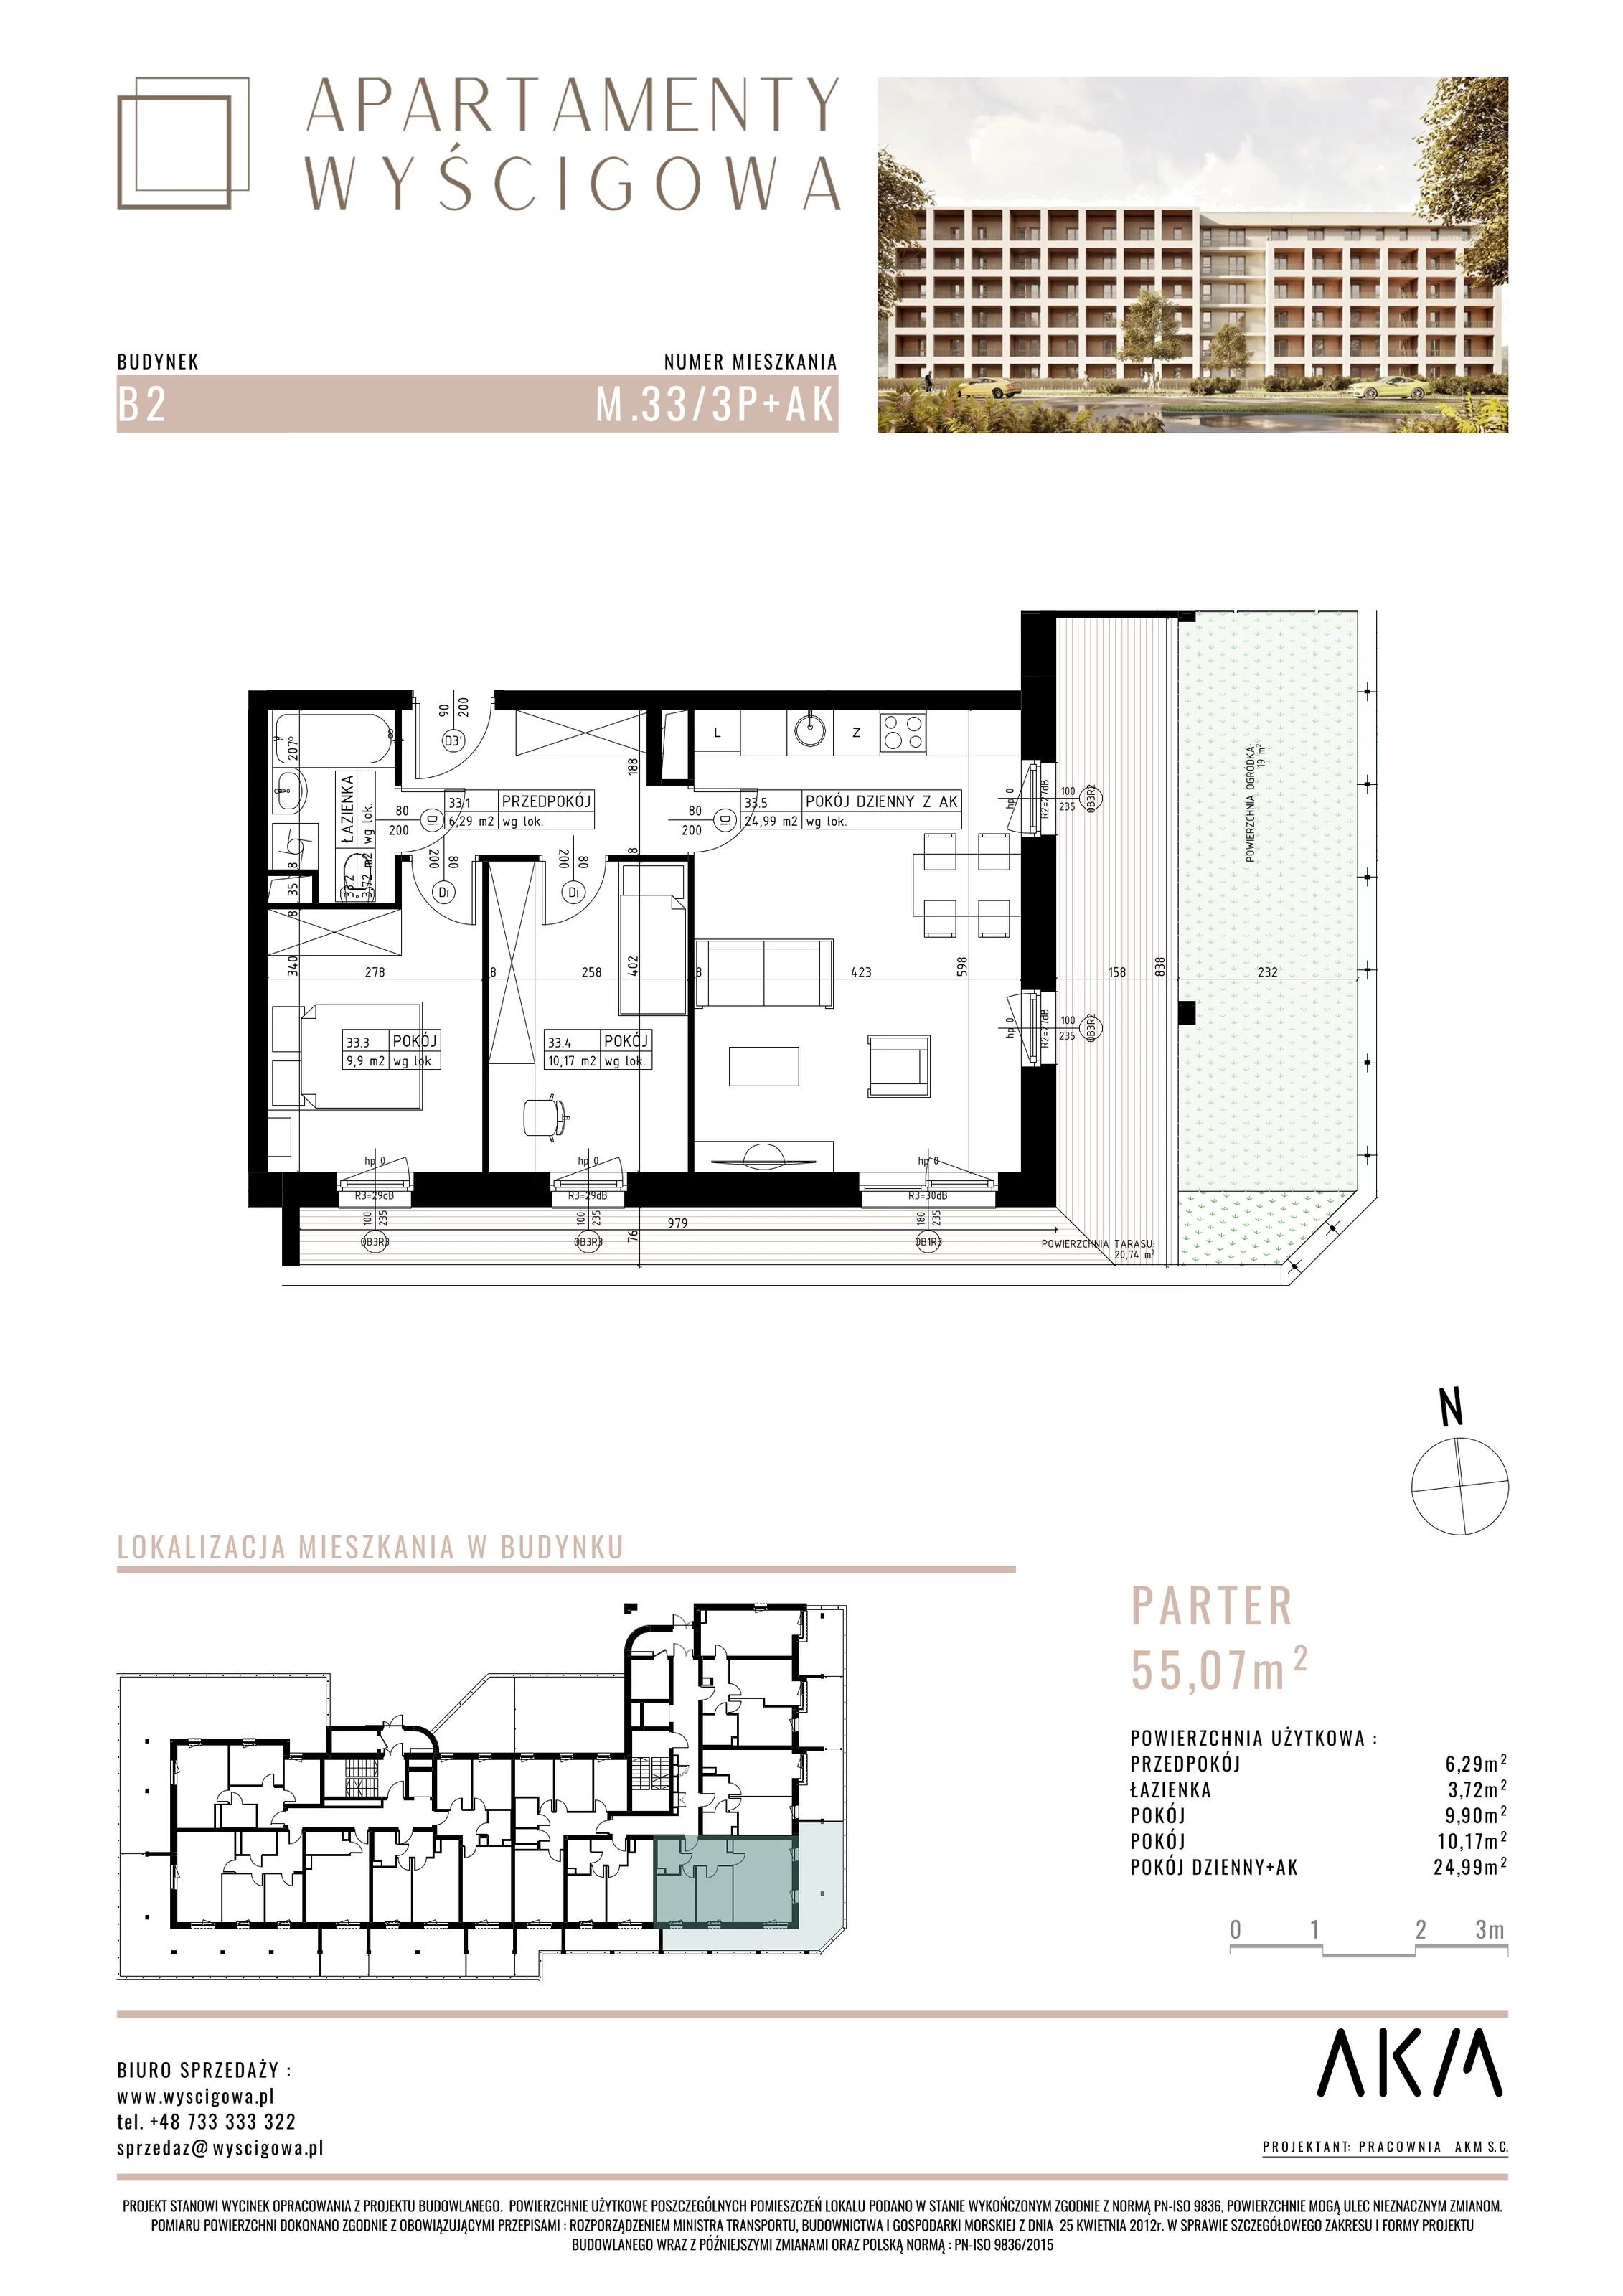 Mieszkanie 55,07 m², parter, oferta nr B2.M33, Apartamenty Wyścigowa, Lublin, Dziesiąta, Dziesiąta, ul. Wyścigowa